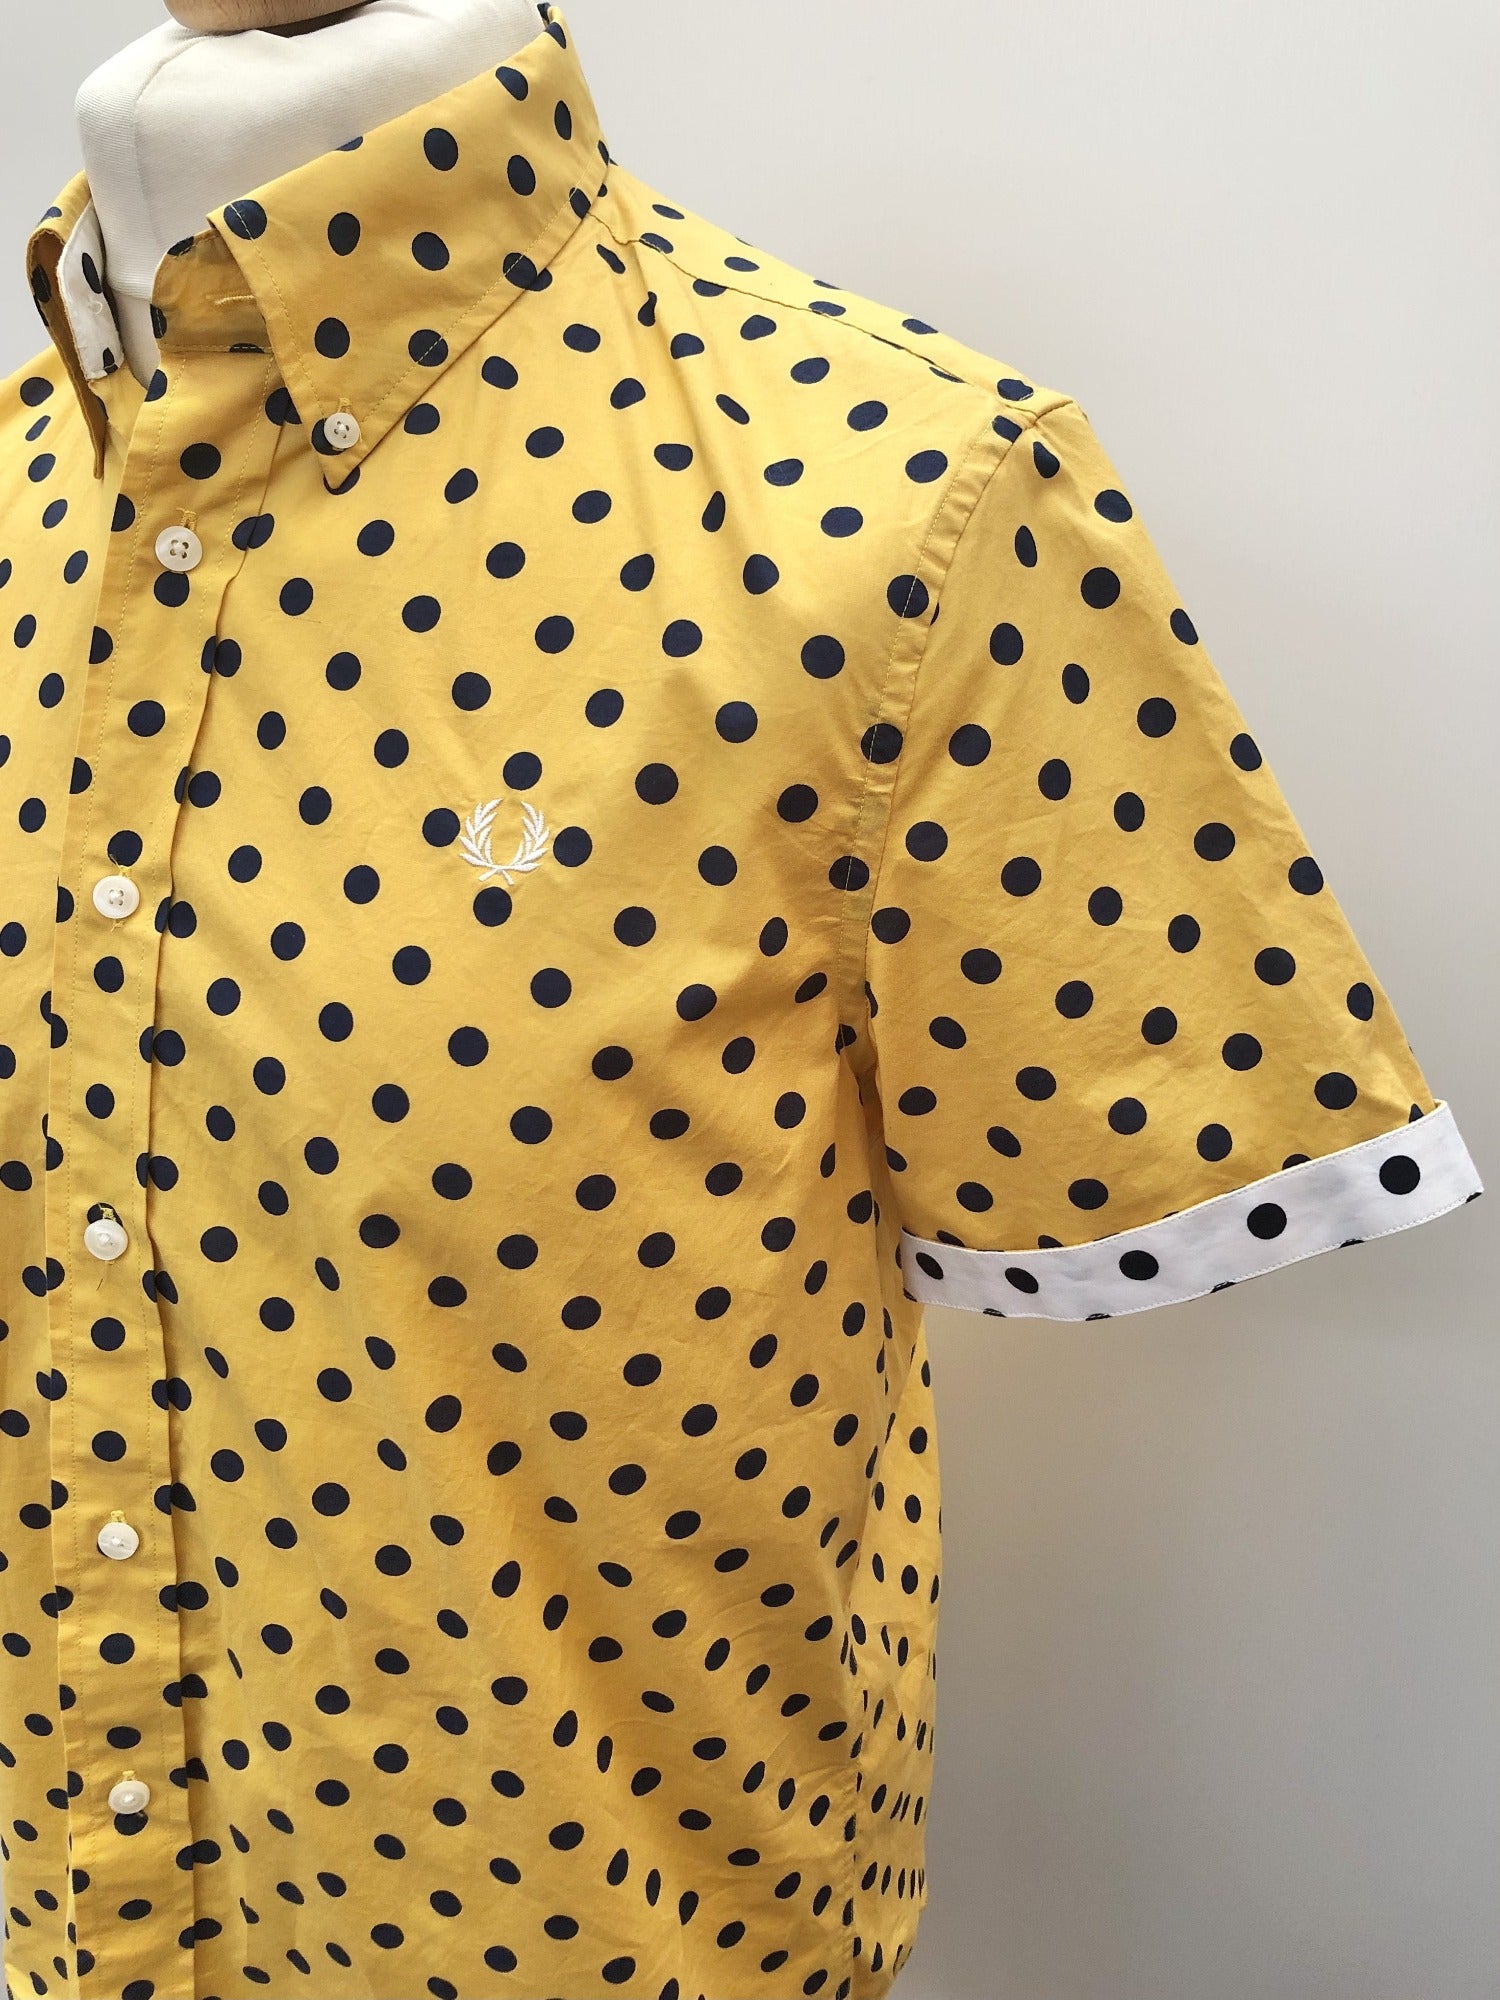 mens yellow polka dot shirt